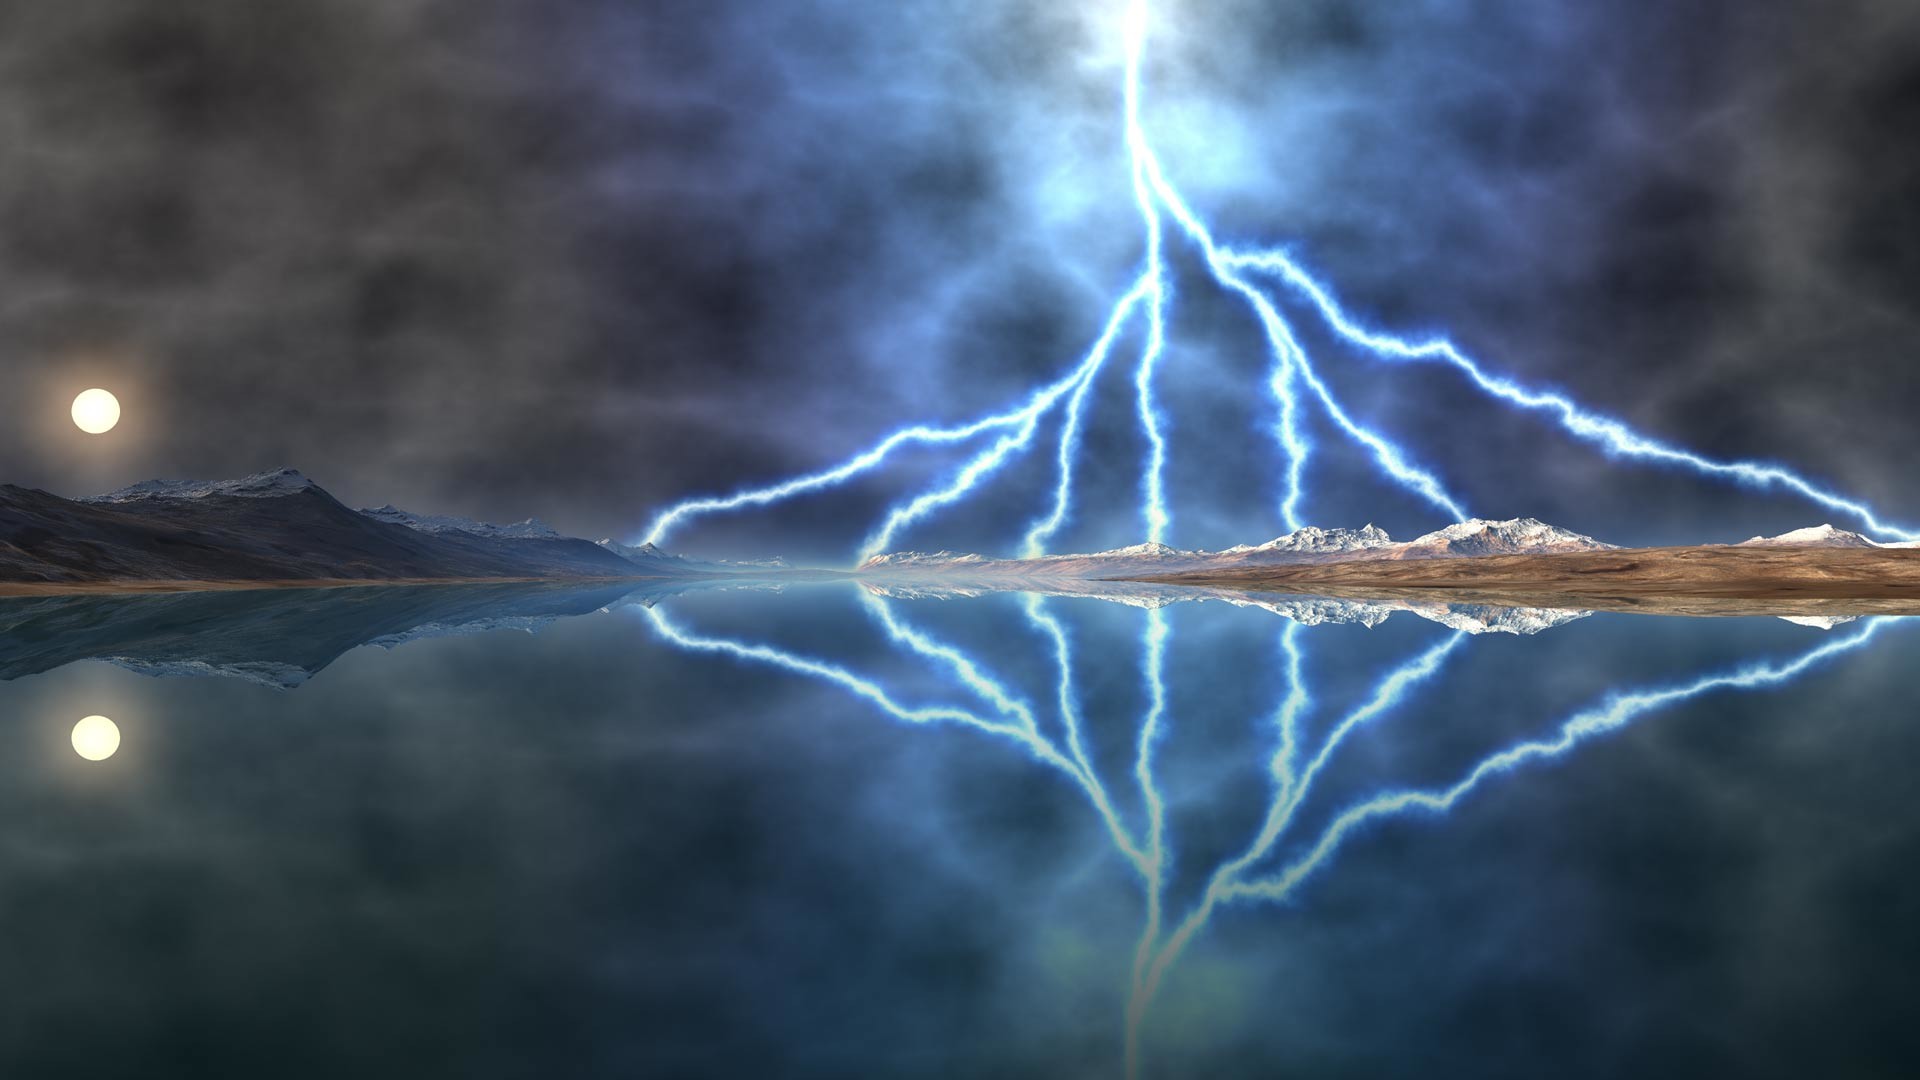 1920x1080 Lightening storm over lake desktop background. Landscape background for use  as a desktop wallpaper picture.